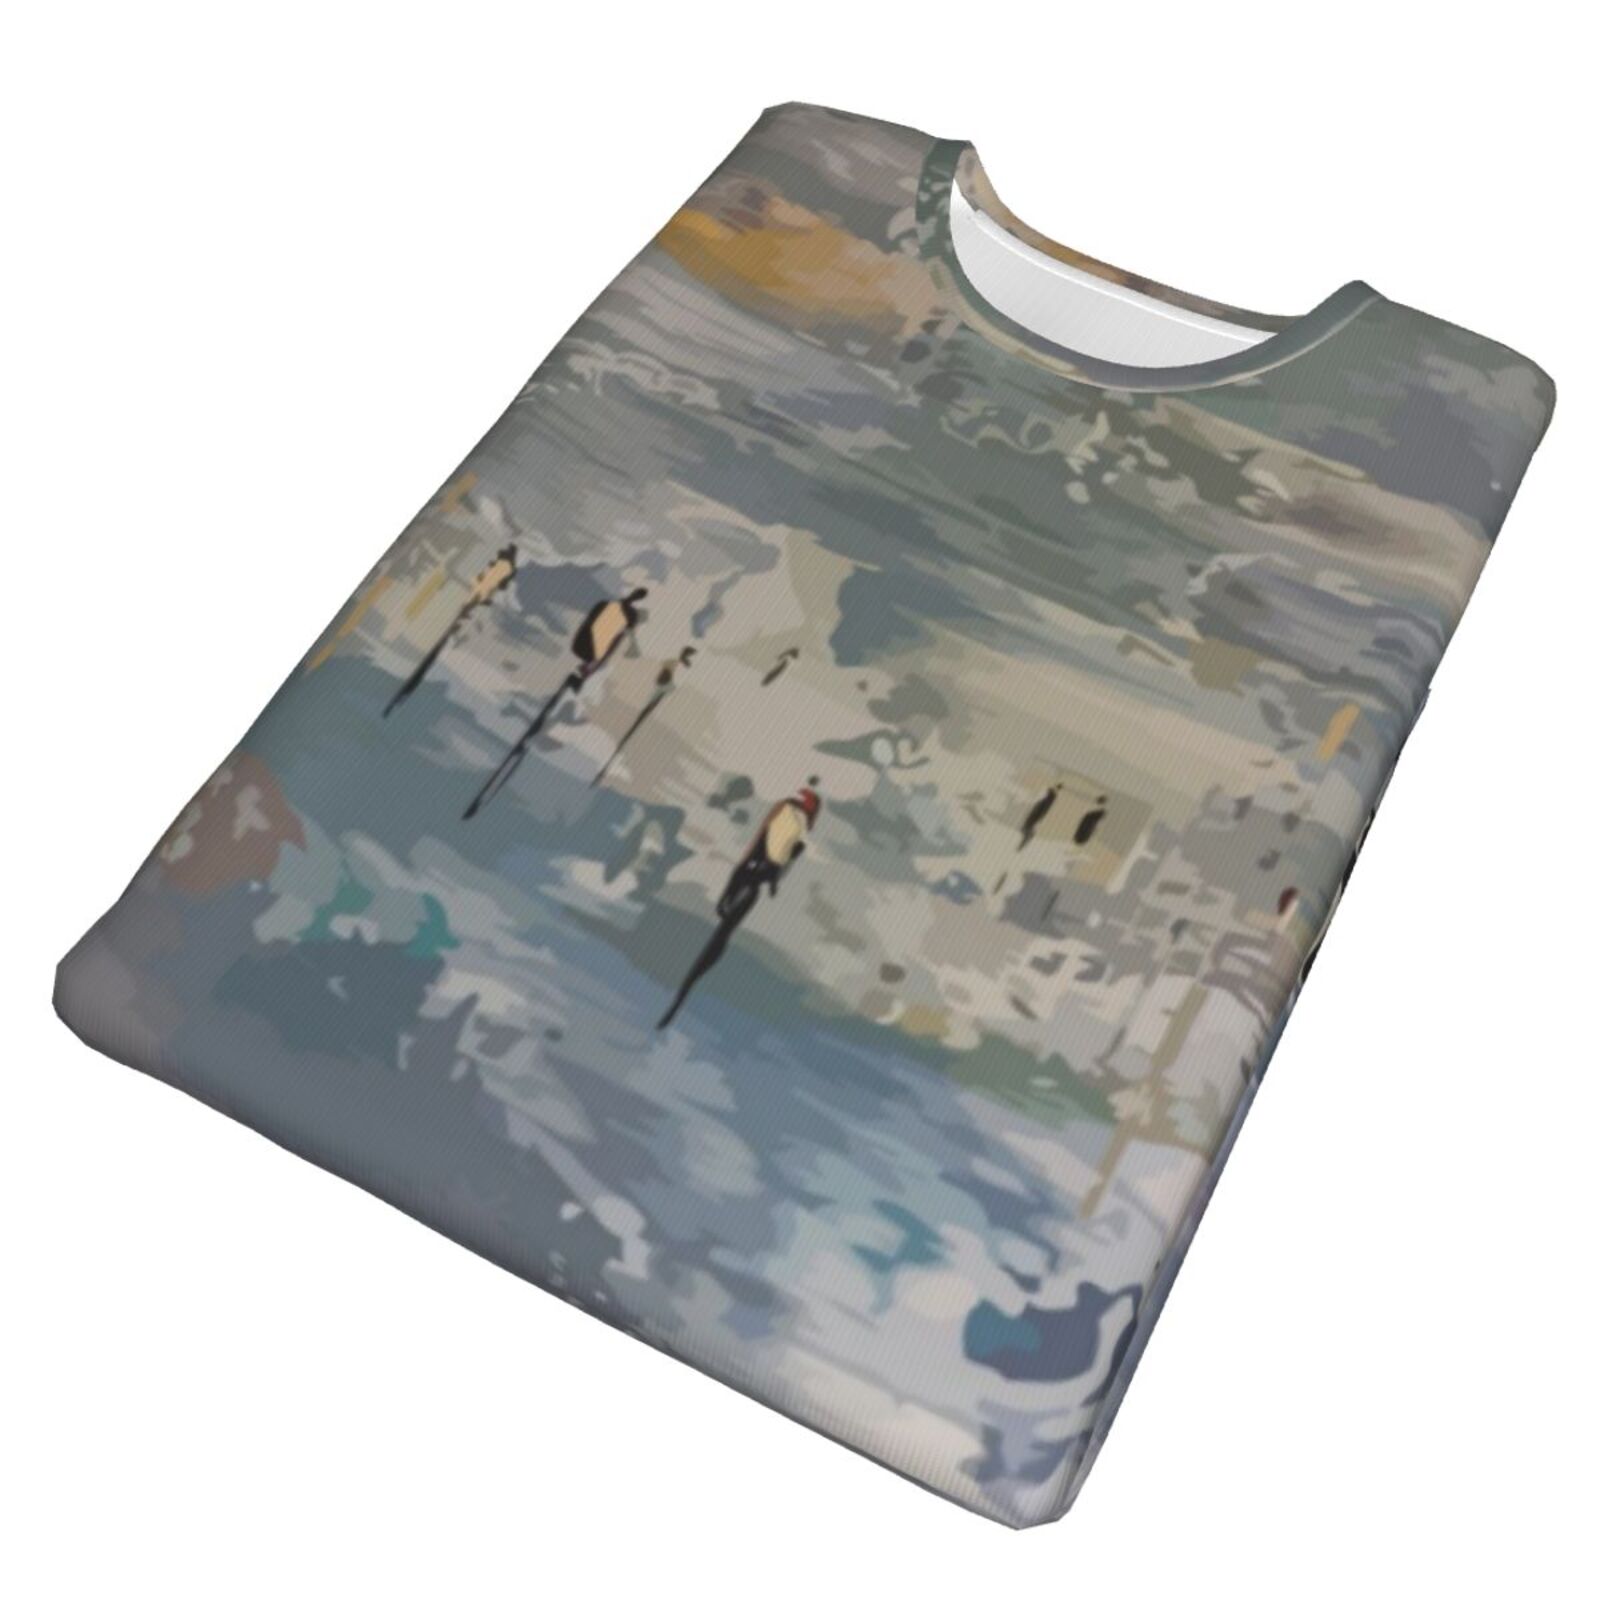 Camiseta Clásica Habla Con Los Elementos De Pintura De Las Nubes